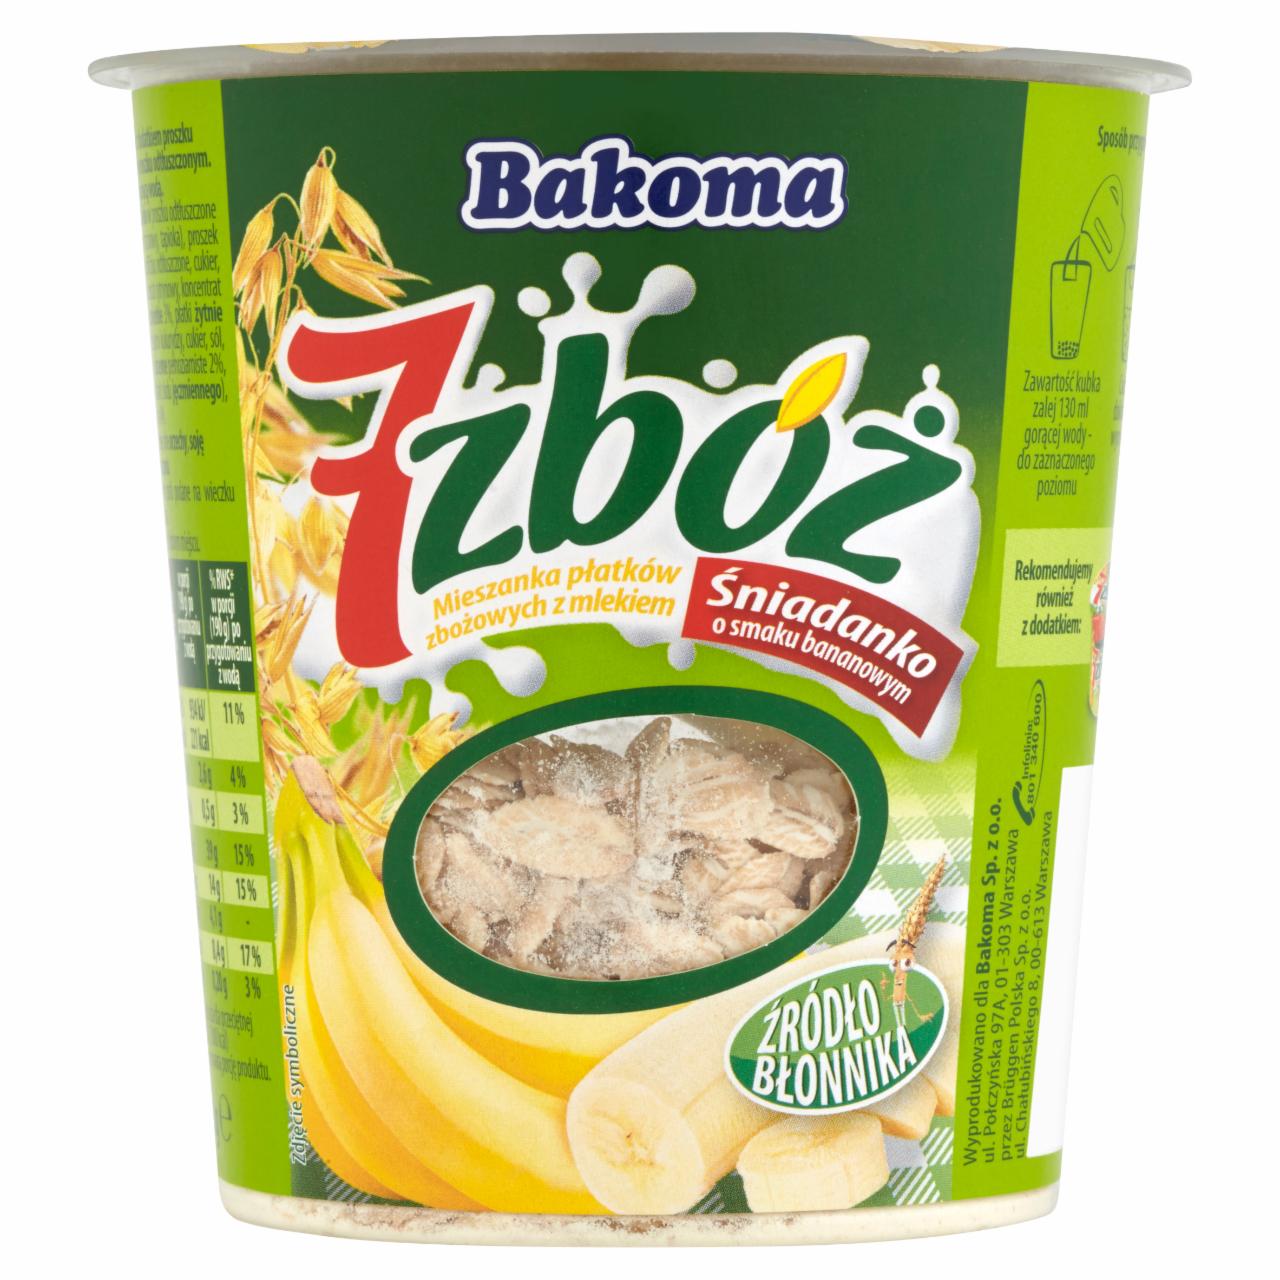 Zdjęcia - Bakoma 7 zbóż Śniadanko o smaku bananowym Mieszanka płatków zbożowych z mlekiem 60 g